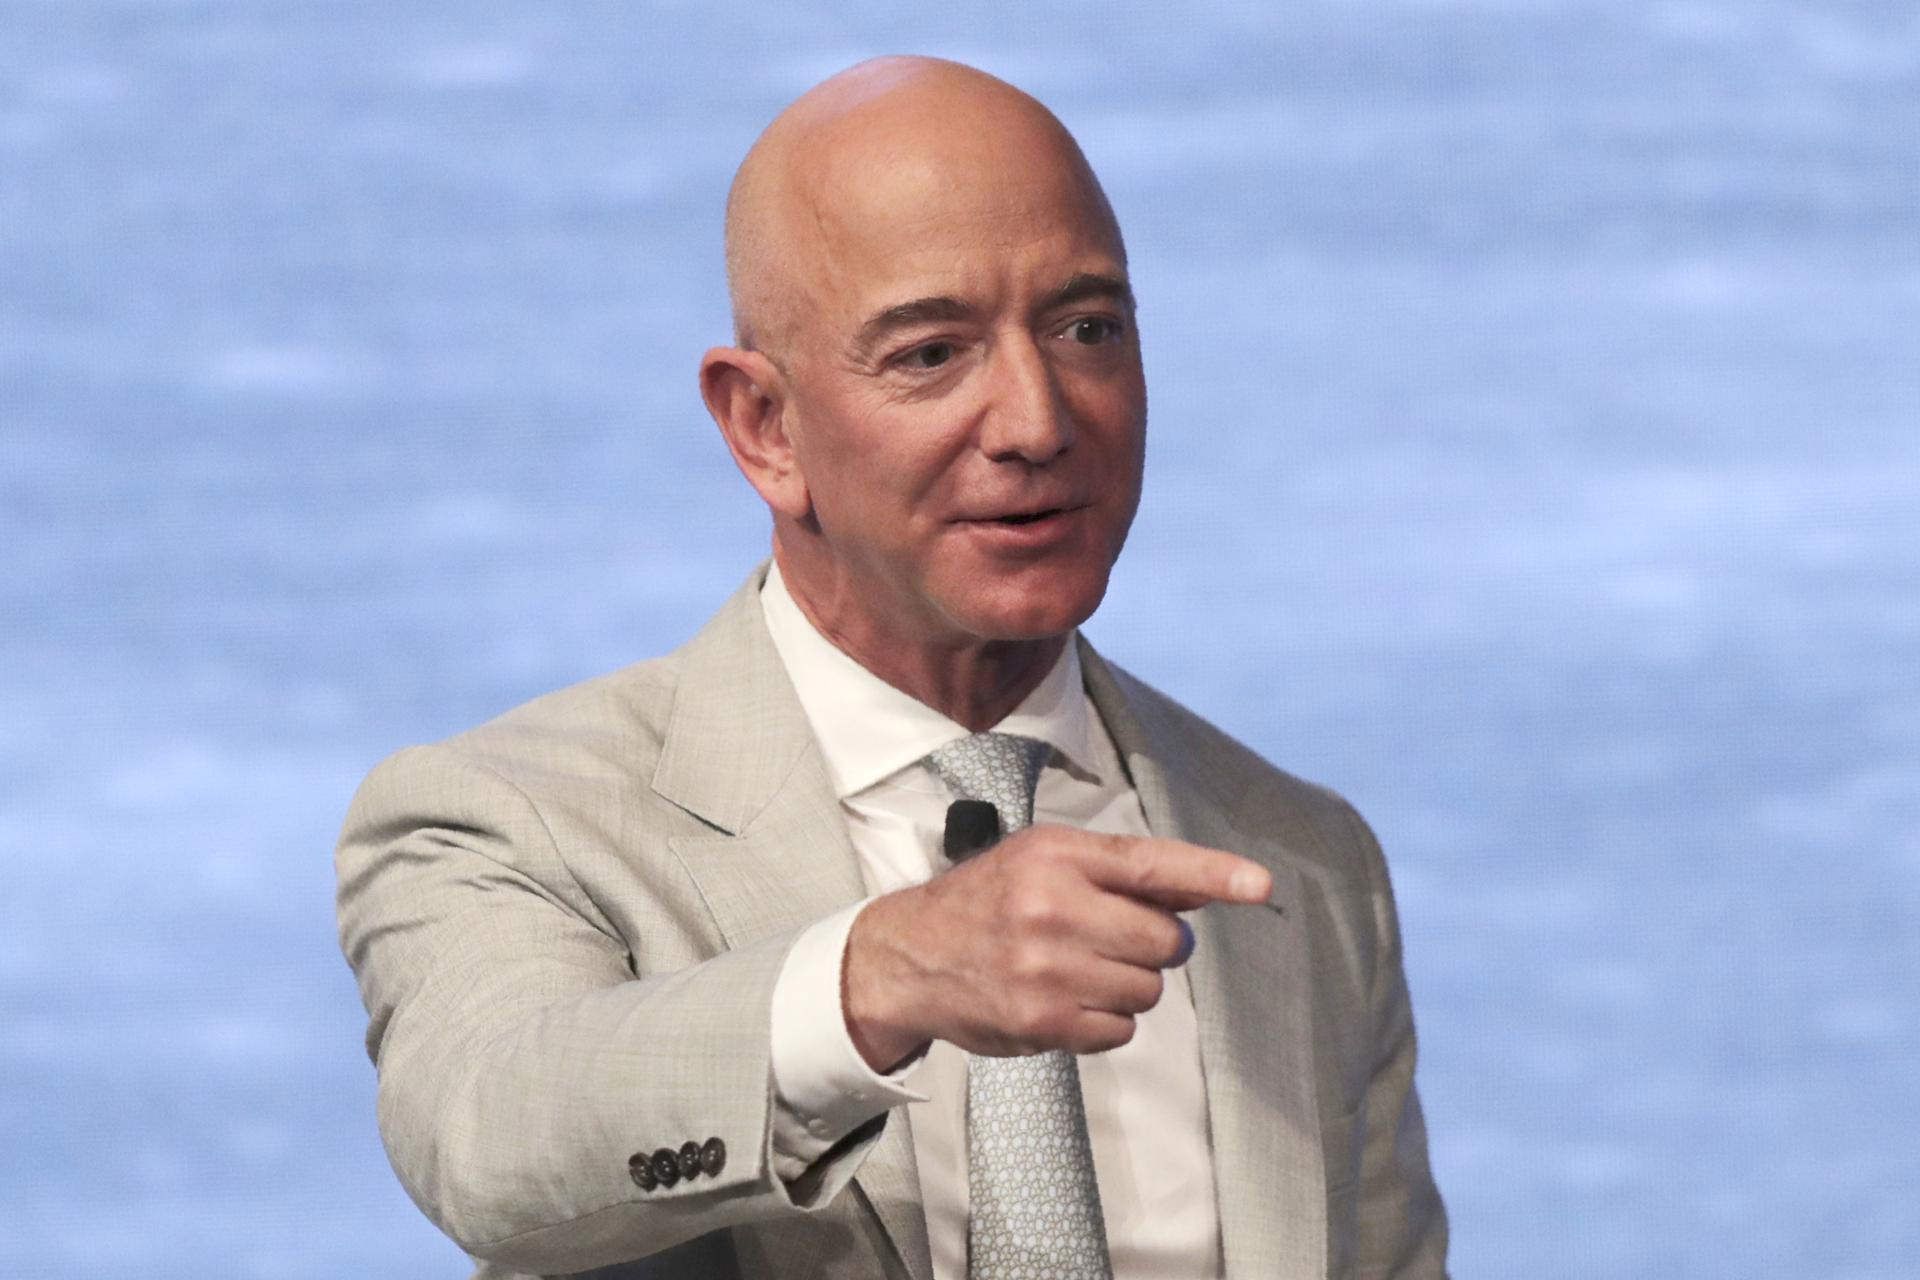 جف بیزوس / Jeff Bezos مدیرعامل آمازون در کت شلوار سفید مشغول سخنرانی